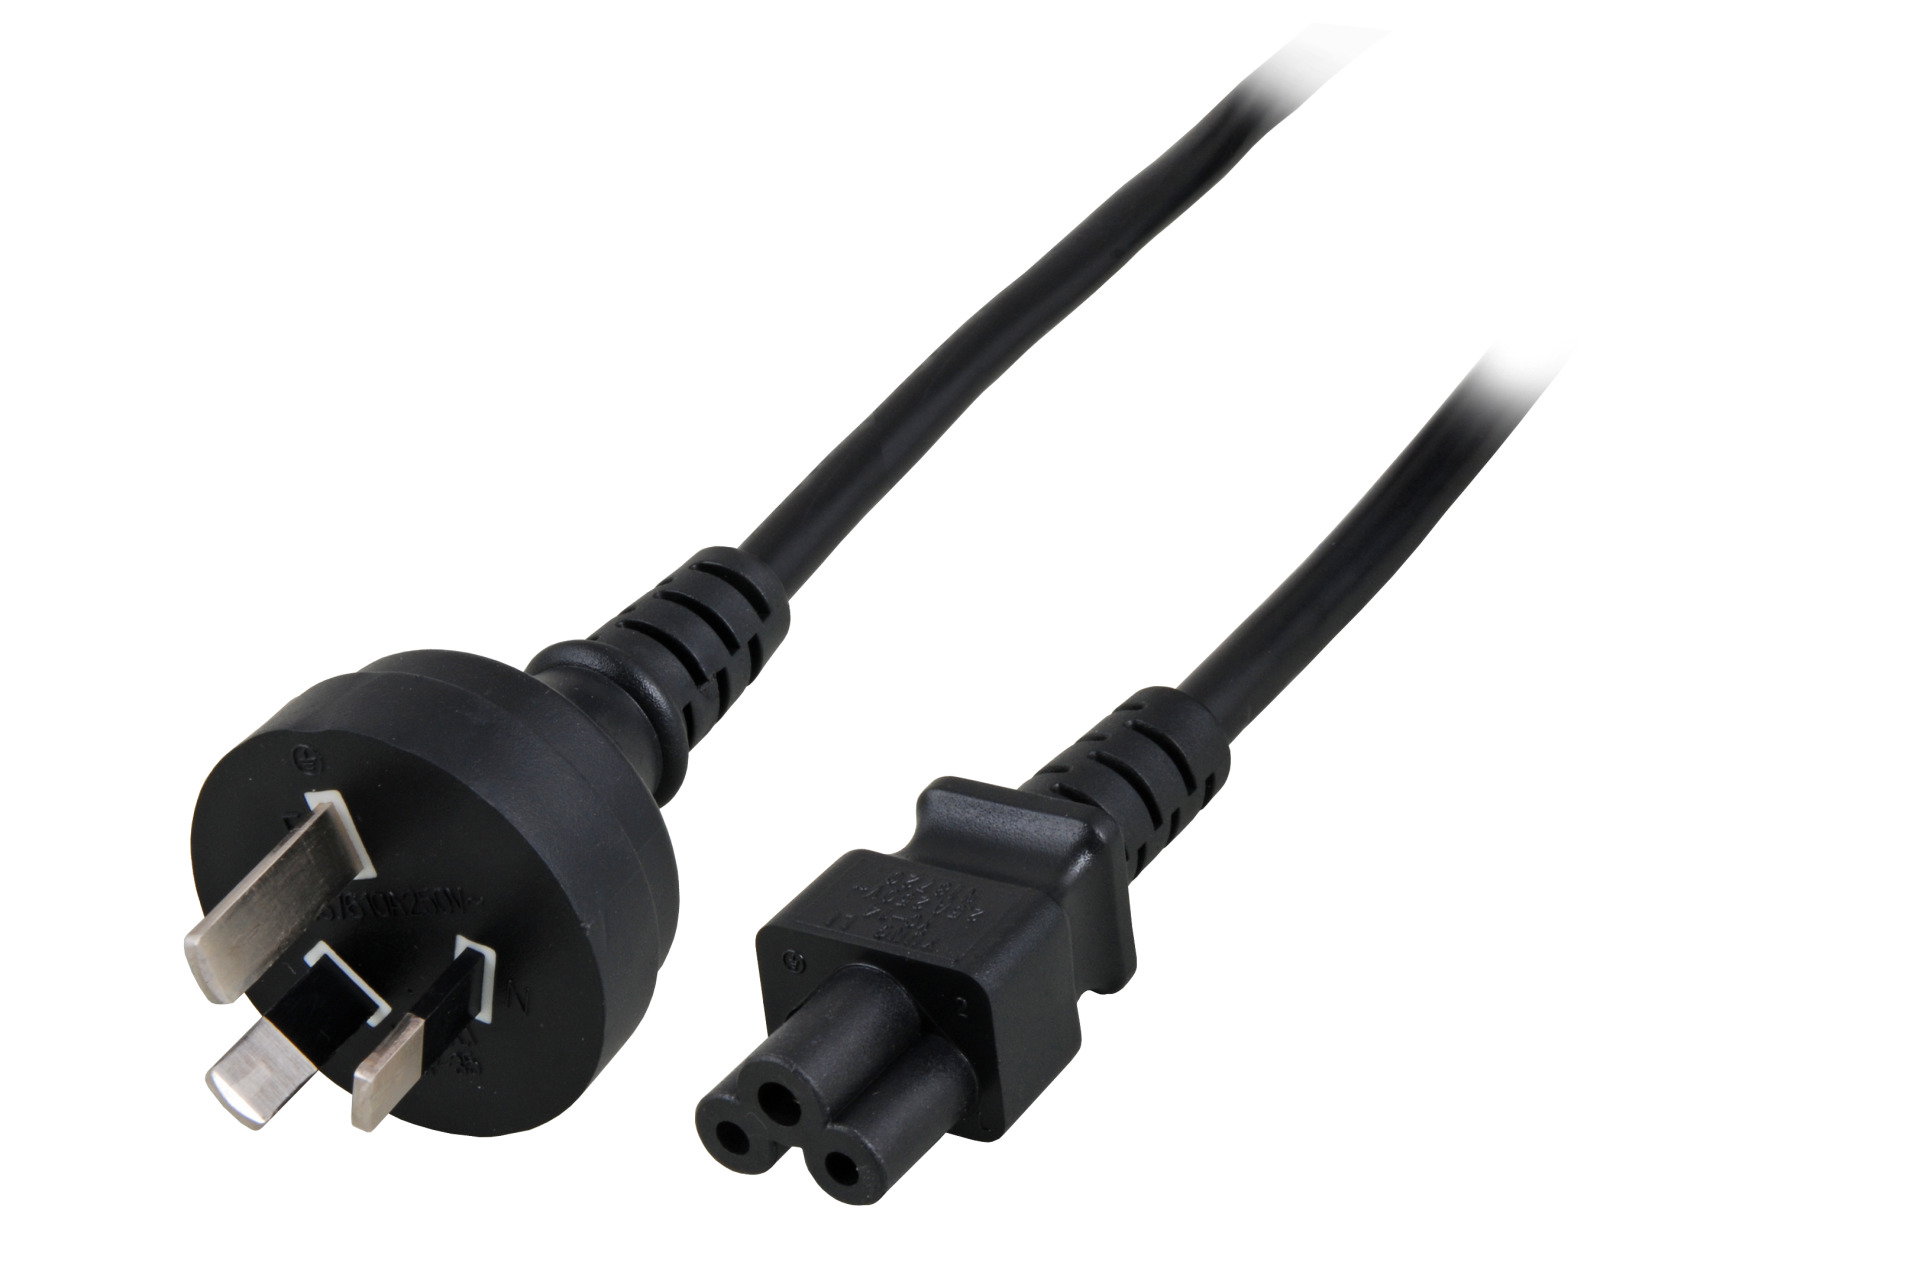 Power Cable Australia - C5 180°, Black, 1.8 m, 3 x 0.75 mm²